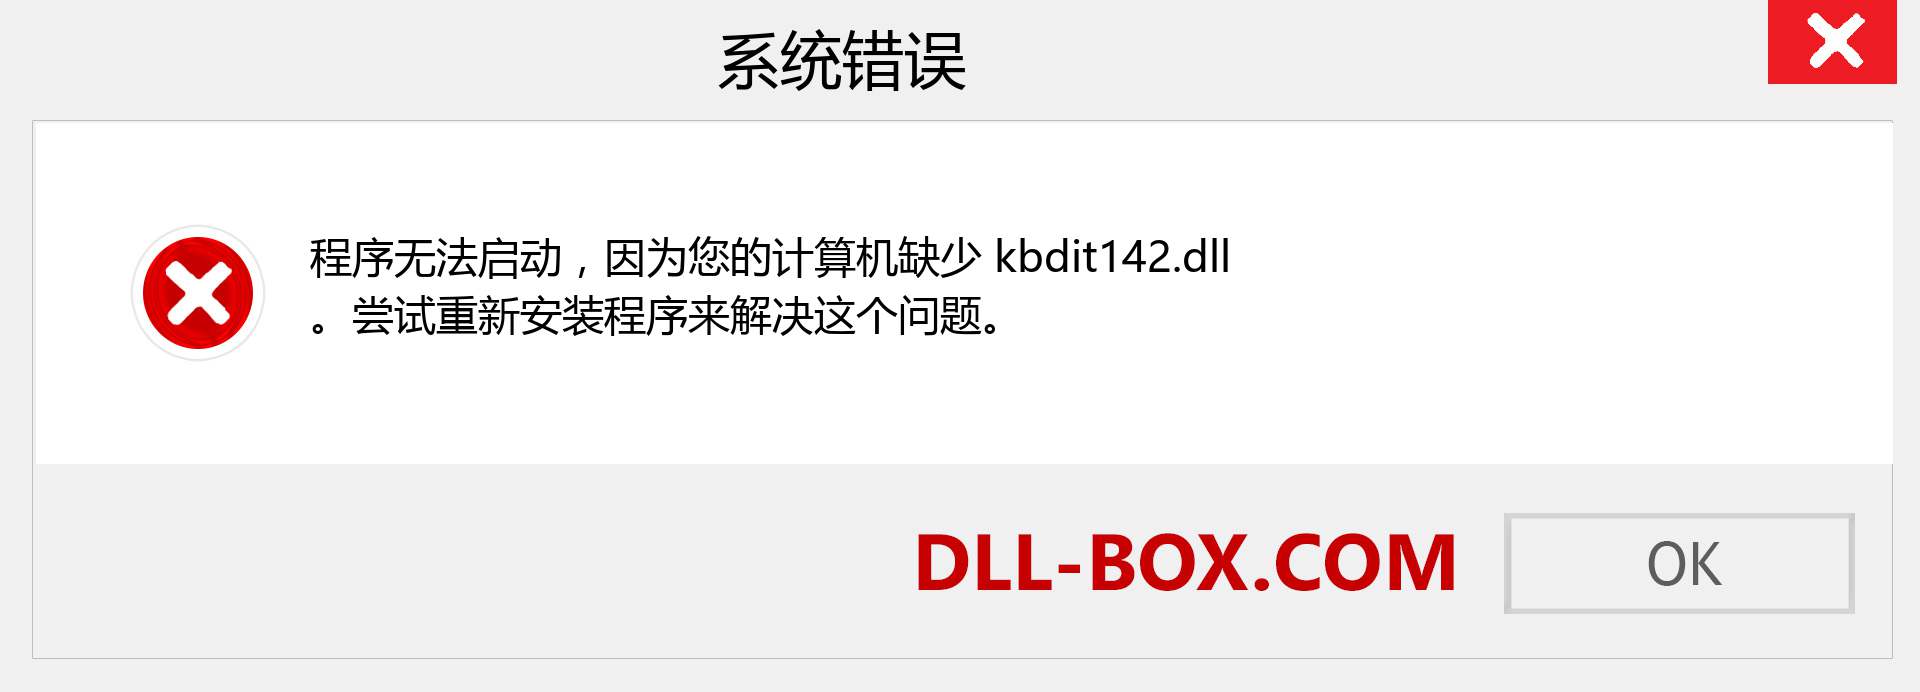 kbdit142.dll 文件丢失？。 适用于 Windows 7、8、10 的下载 - 修复 Windows、照片、图像上的 kbdit142 dll 丢失错误